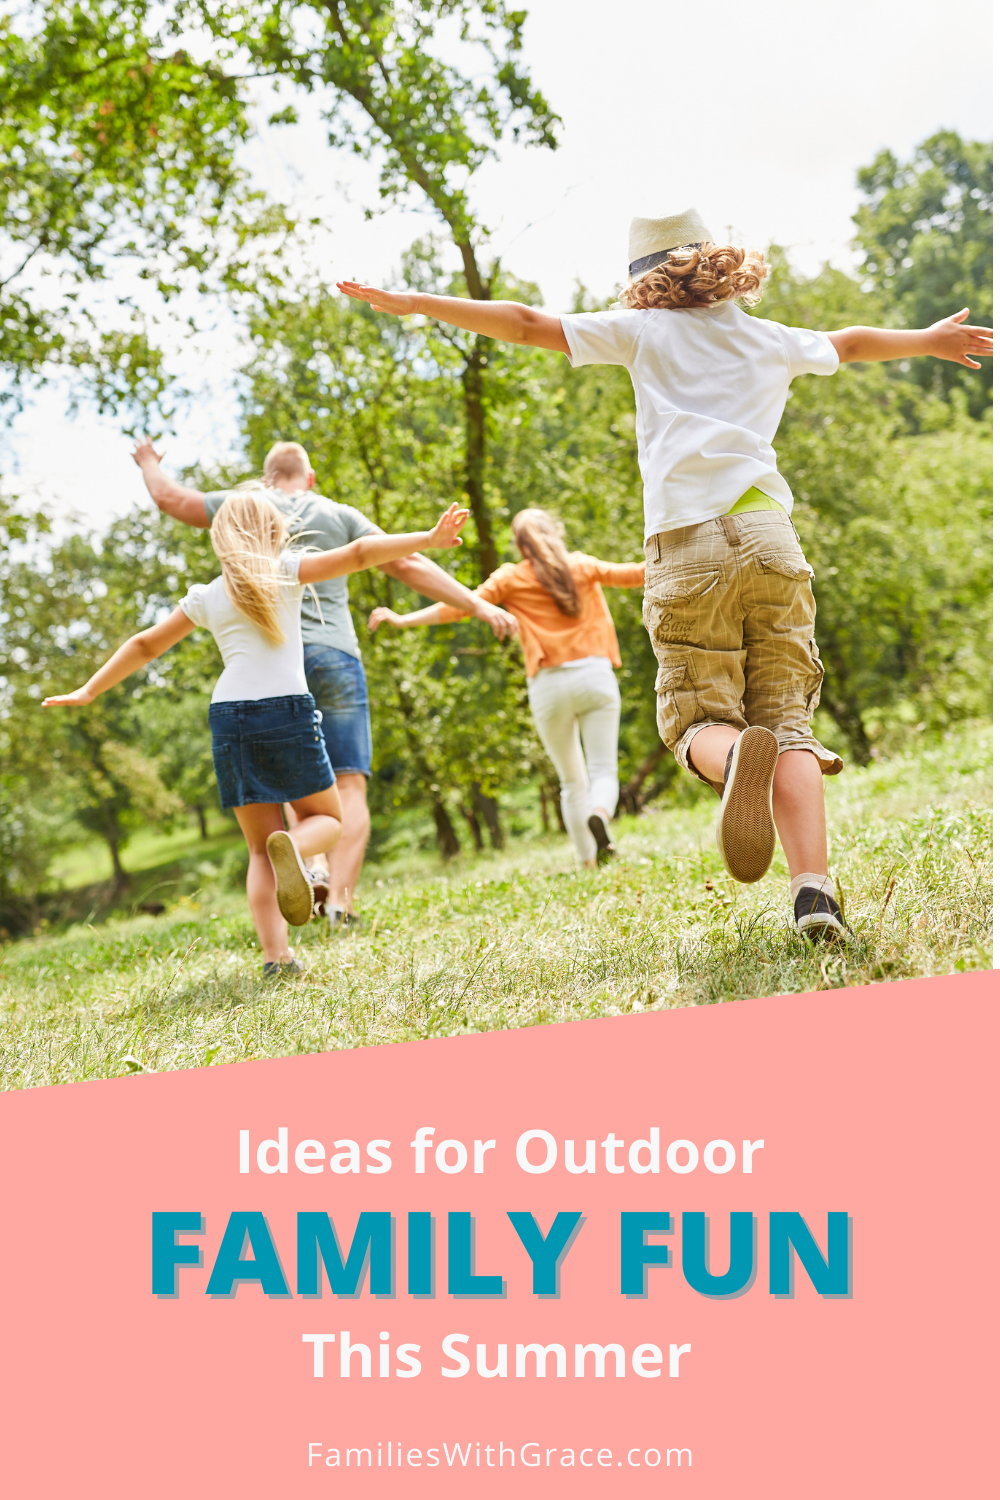 Summer fun ideas for families